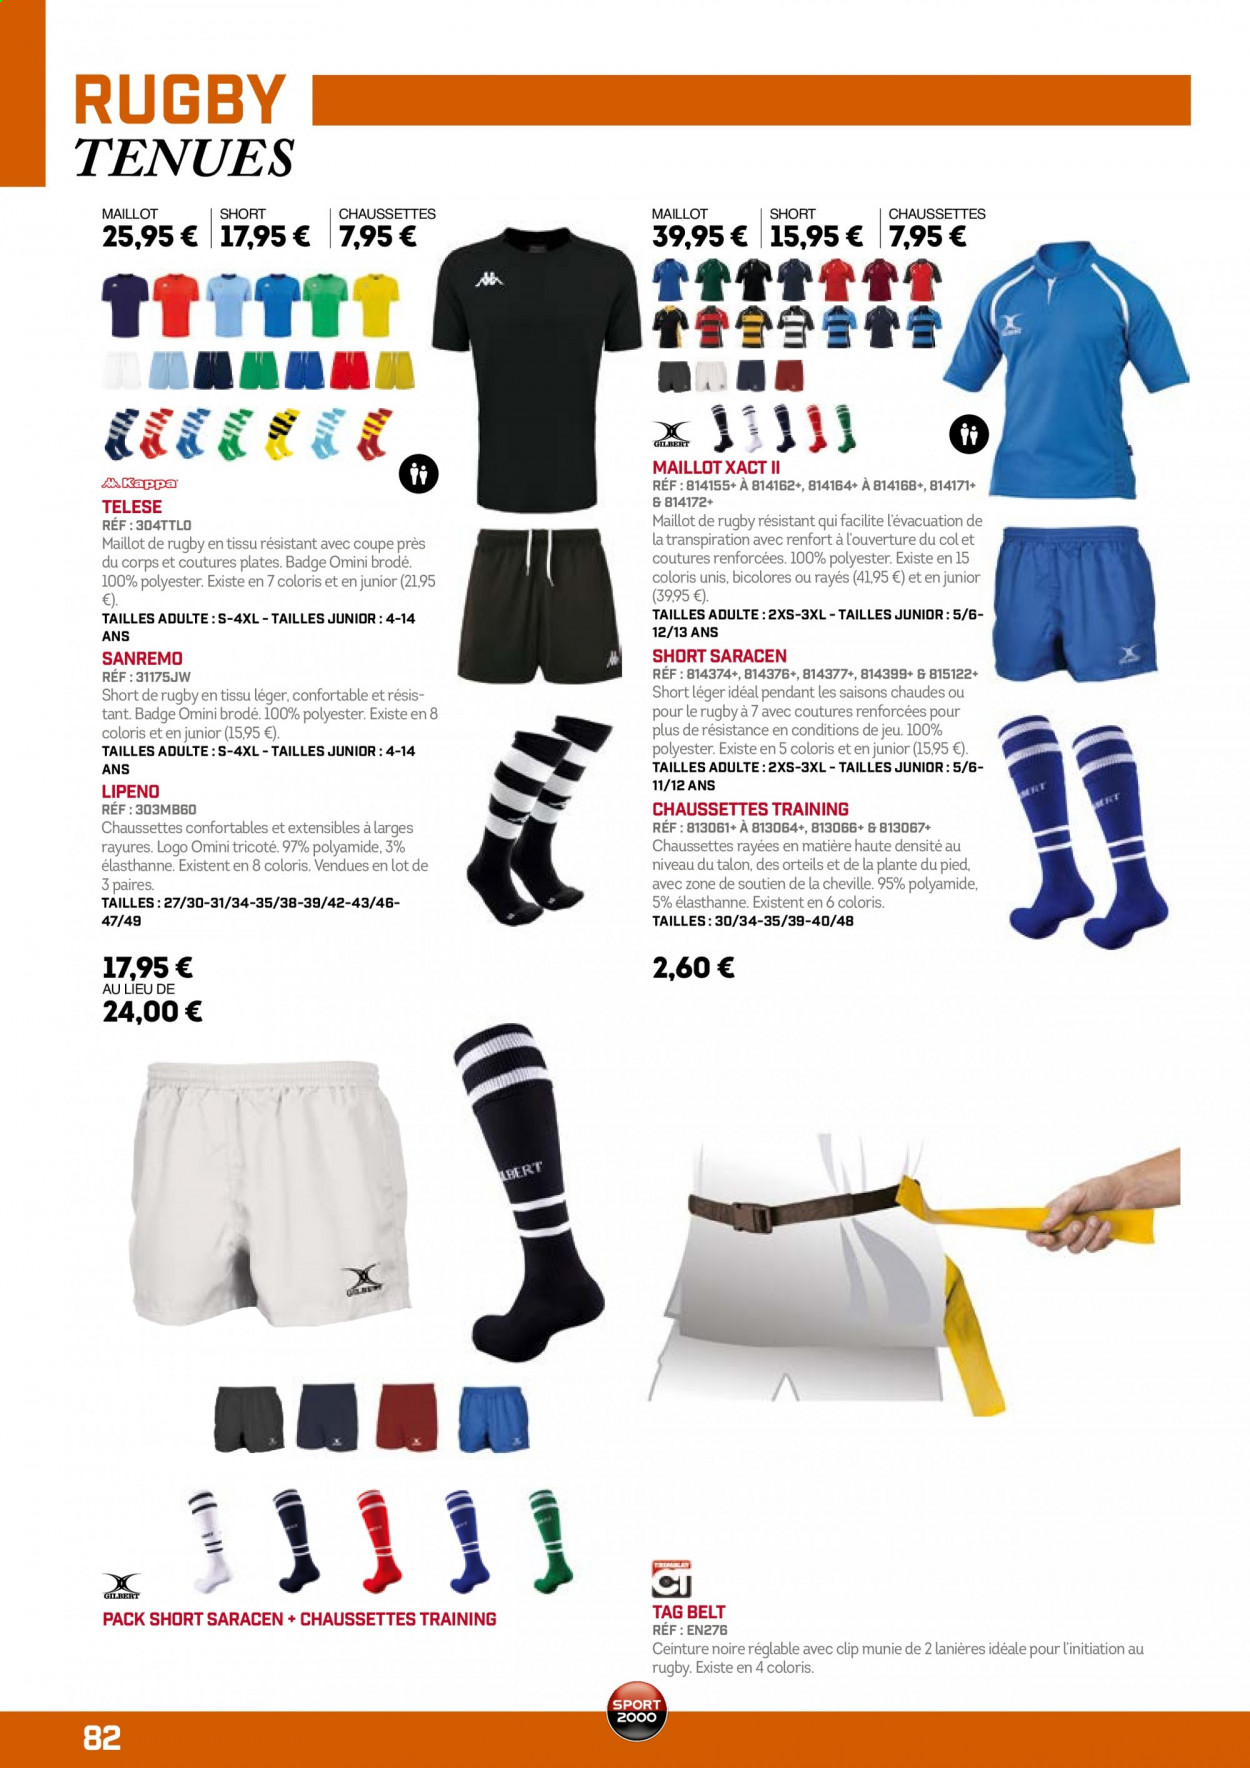 thumbnail - Catalogue Sport 2000 - Produits soldés - shorts, maillot, chaussettes, ceinture. Page 82.